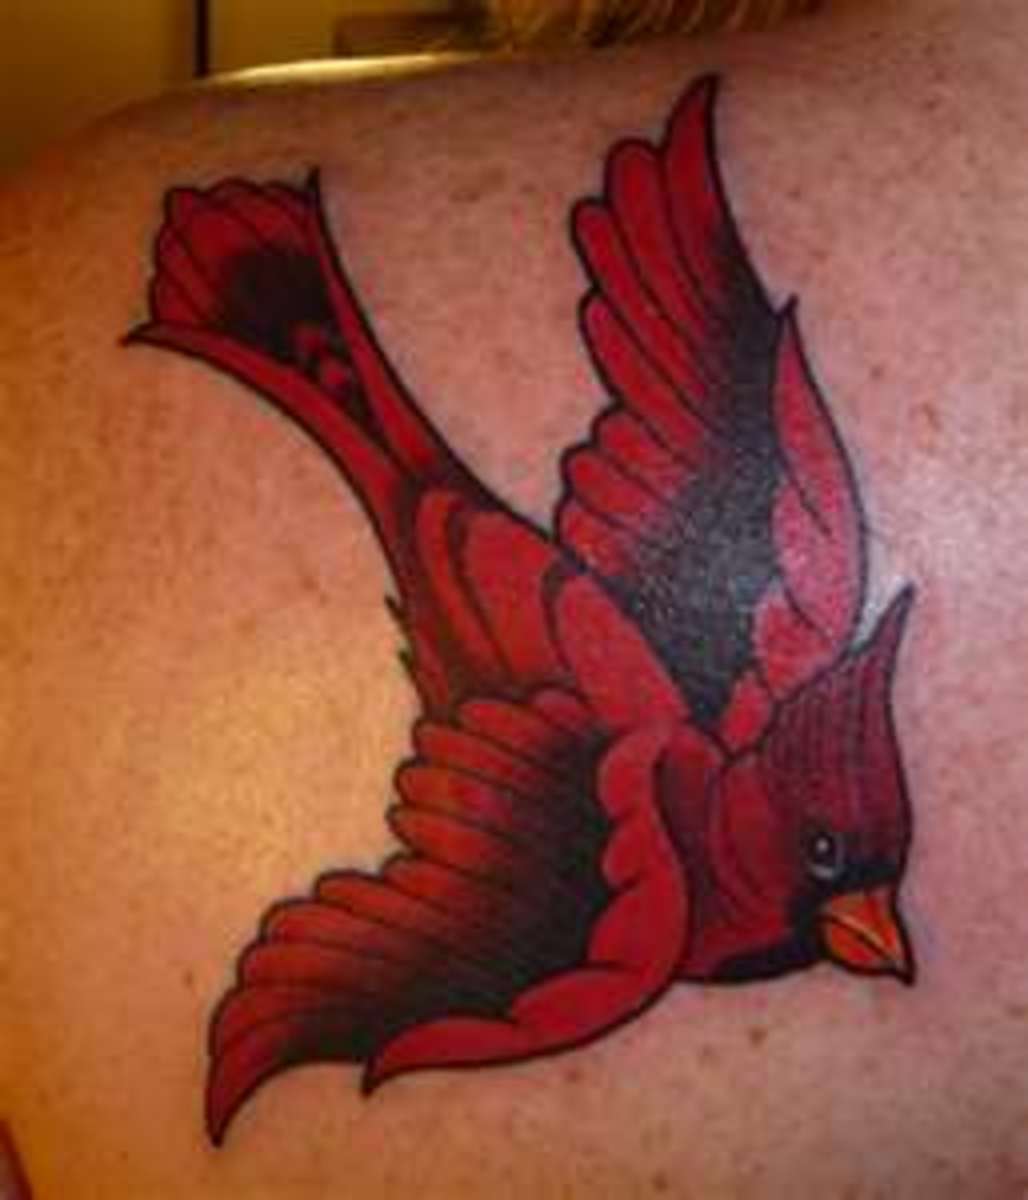 Cardinal Bird Tattoos